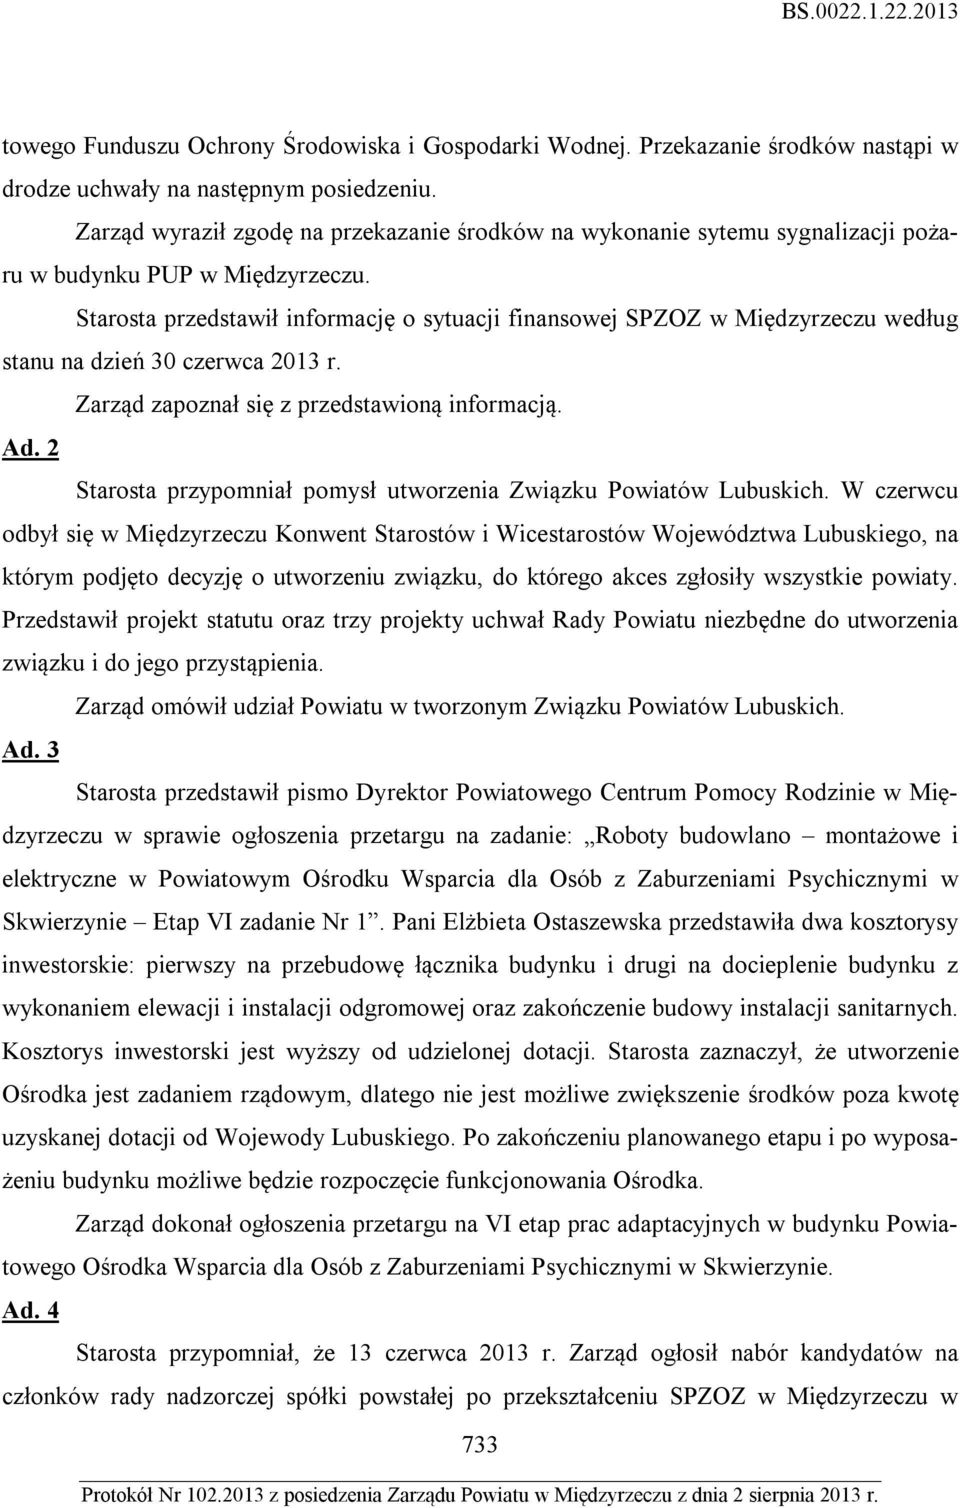 Starosta przedstawił informację o sytuacji finansowej SPZOZ w Międzyrzeczu według stanu na dzień 30 czerwca 2013 r. Ad. 2 Starosta przypomniał pomysł utworzenia Związku Powiatów Lubuskich.